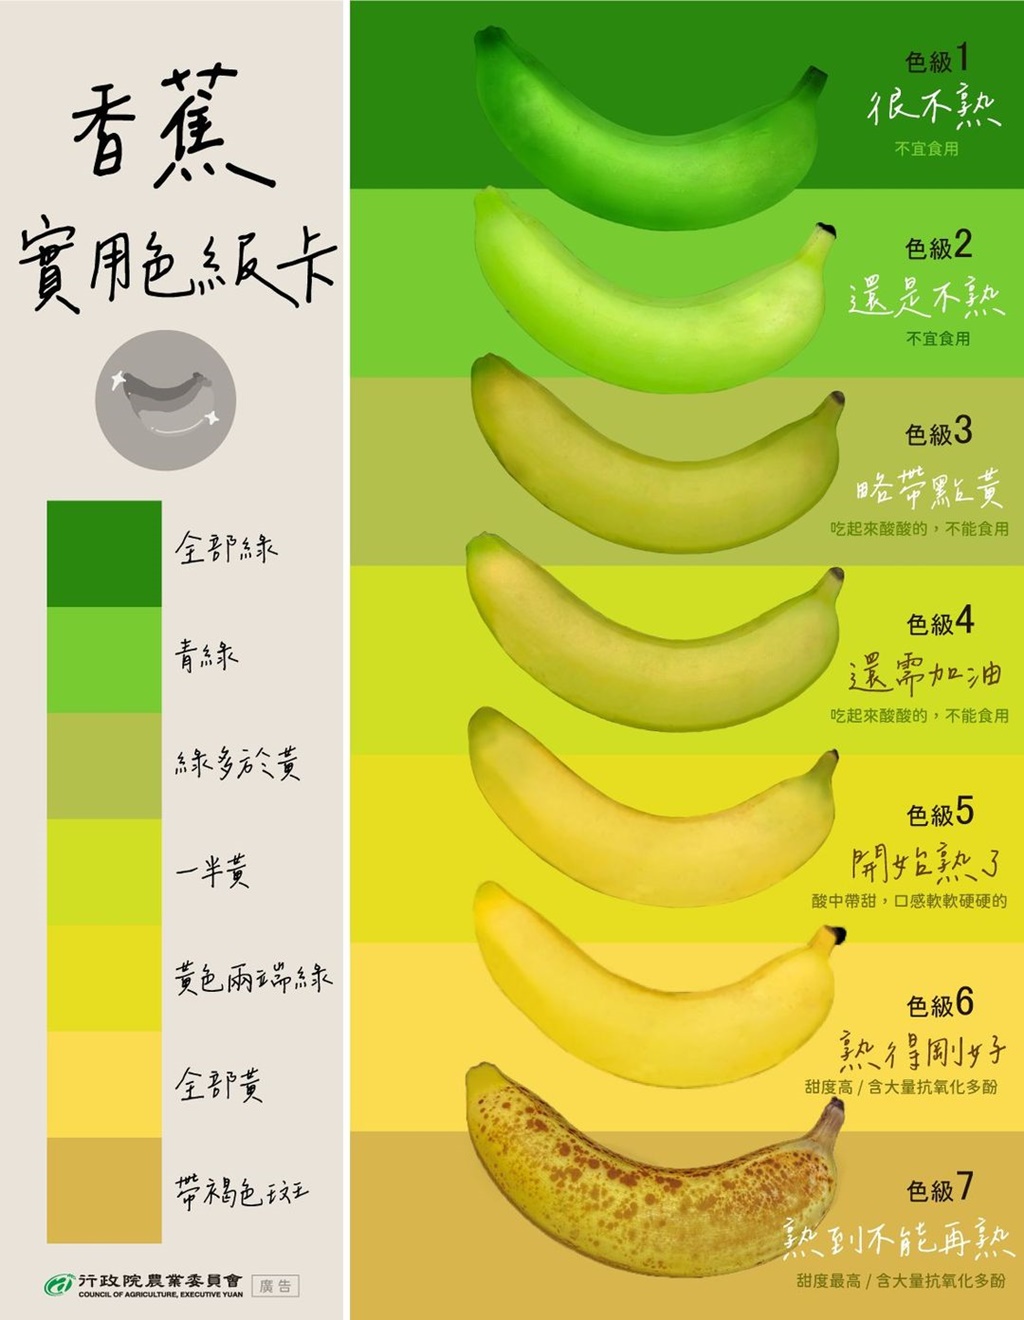 香蕉熟了沒？超實用「色級卡」看分明！彎的香蕉比較甜？看顏色不是看形狀